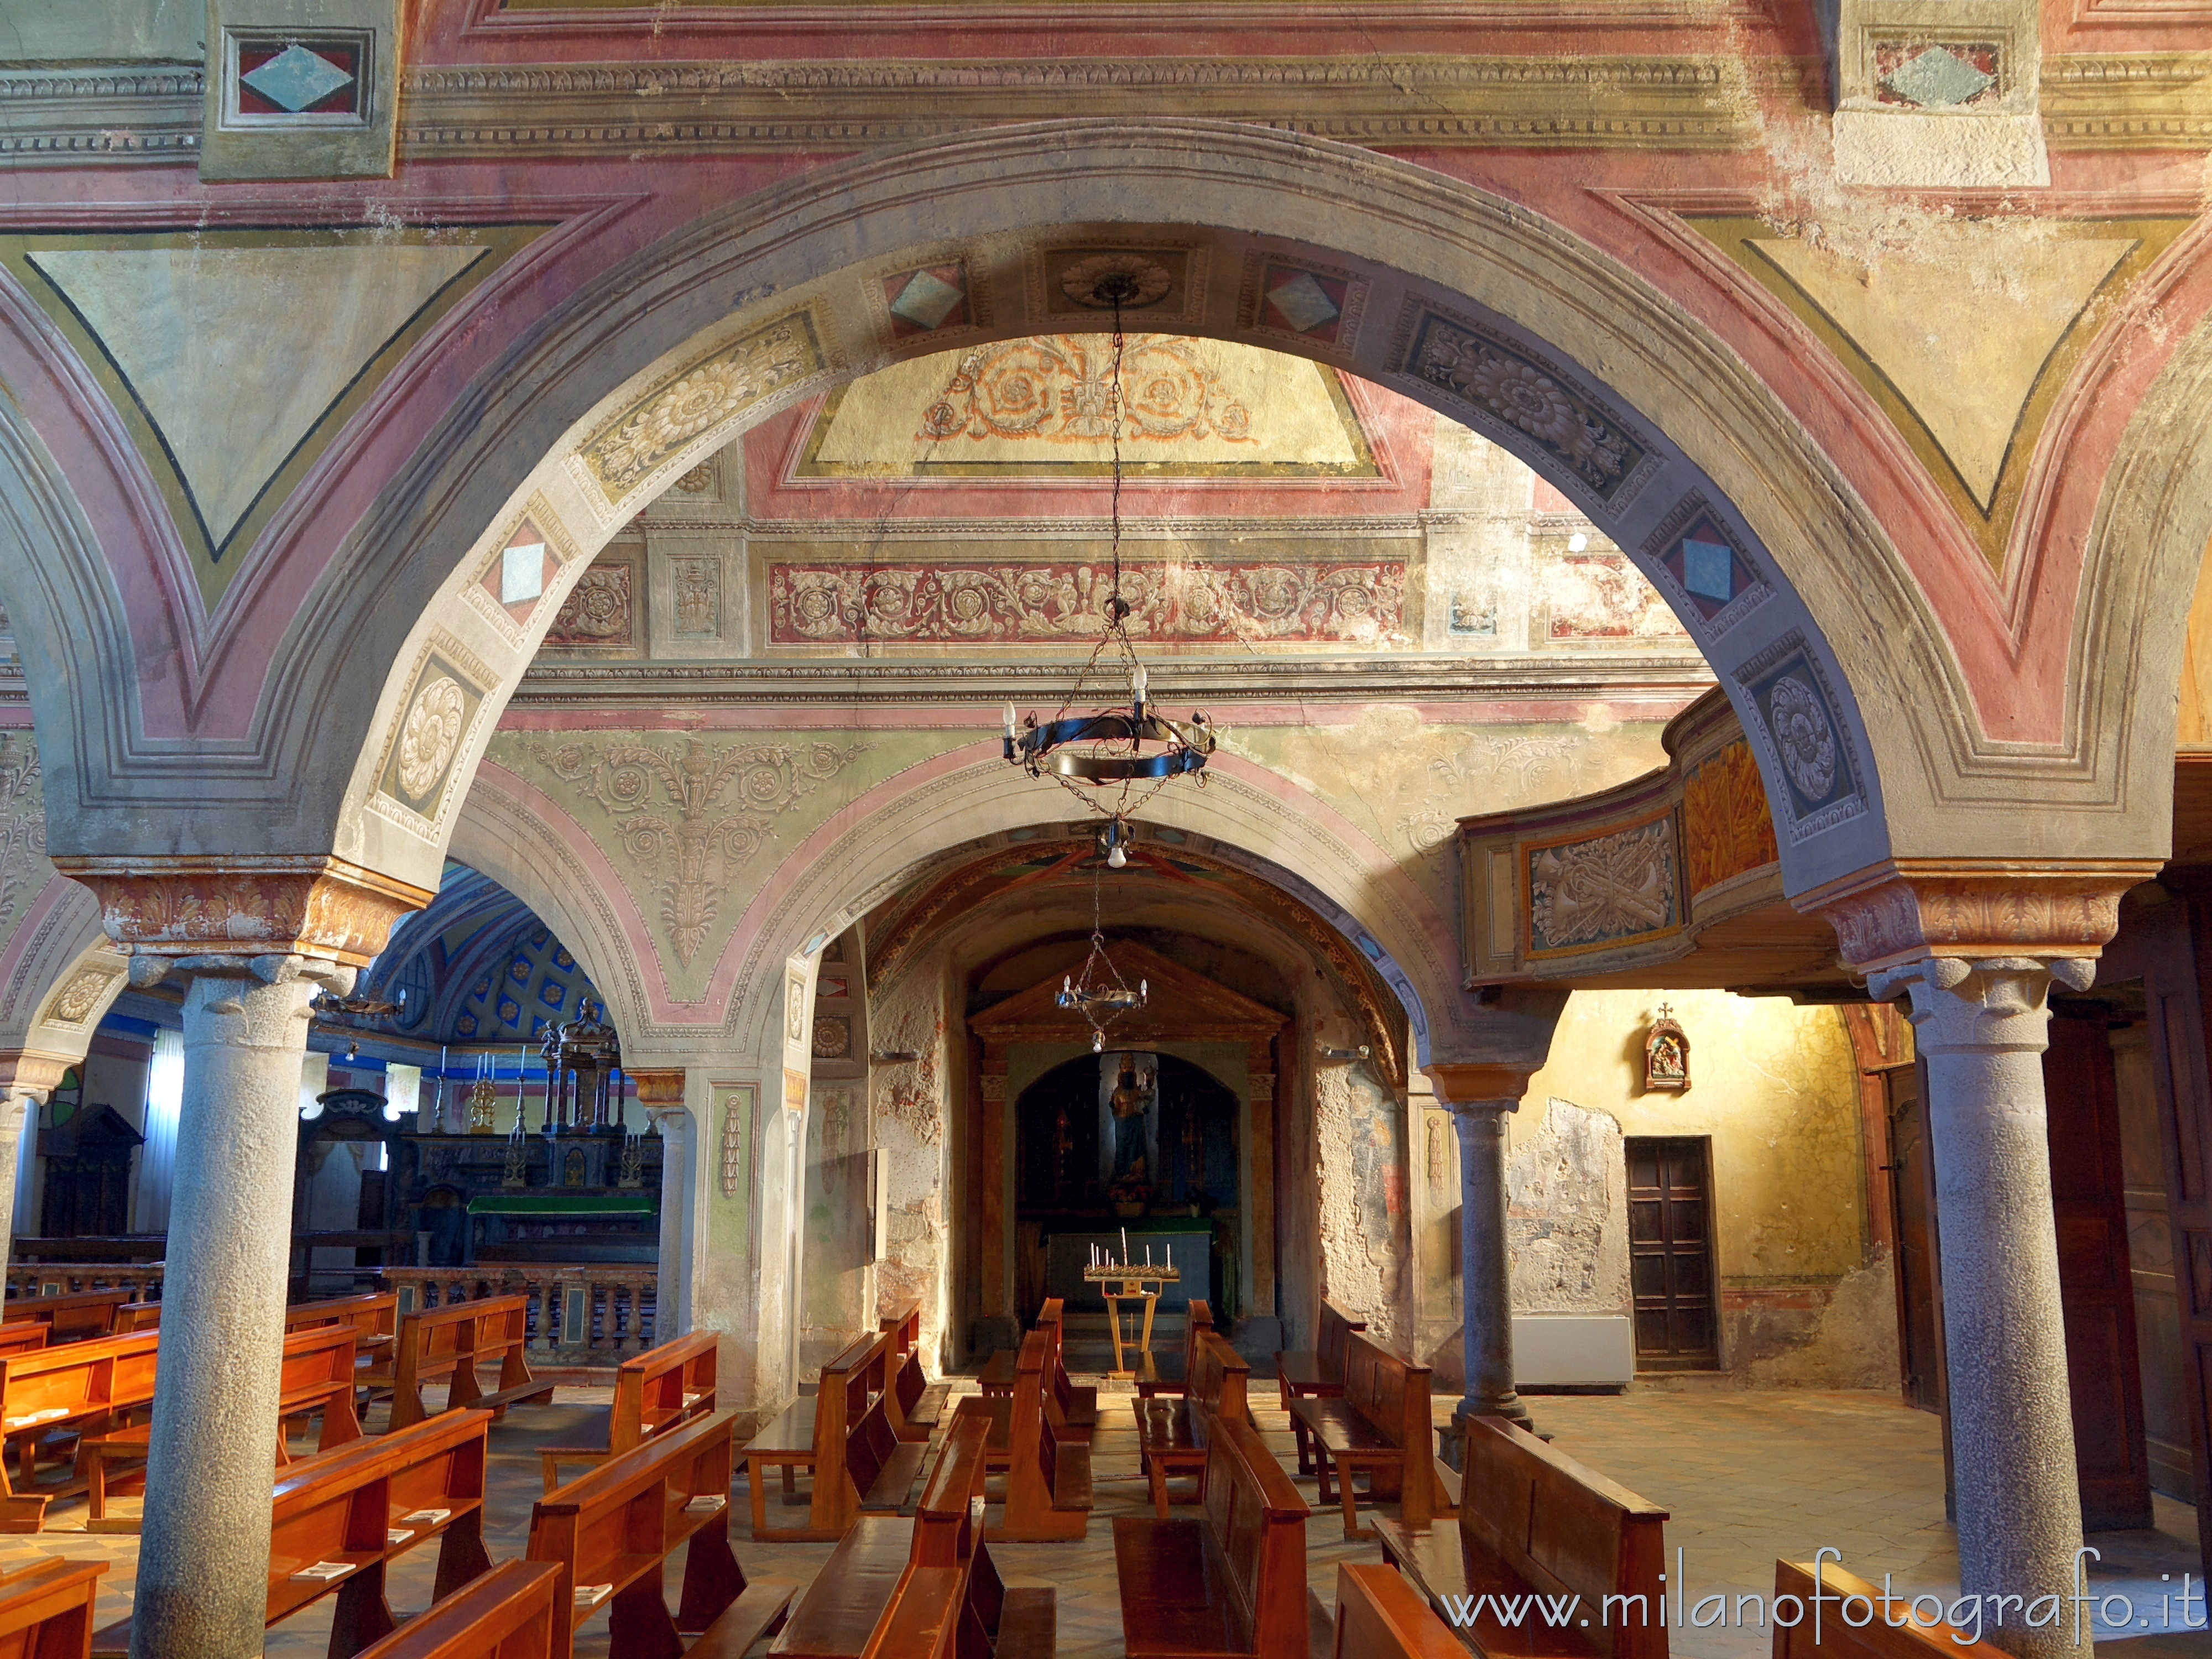 Candelo (Biella): Colonne e archi nella Chiesa di Santa Maria Maggiore - Candelo (Biella)